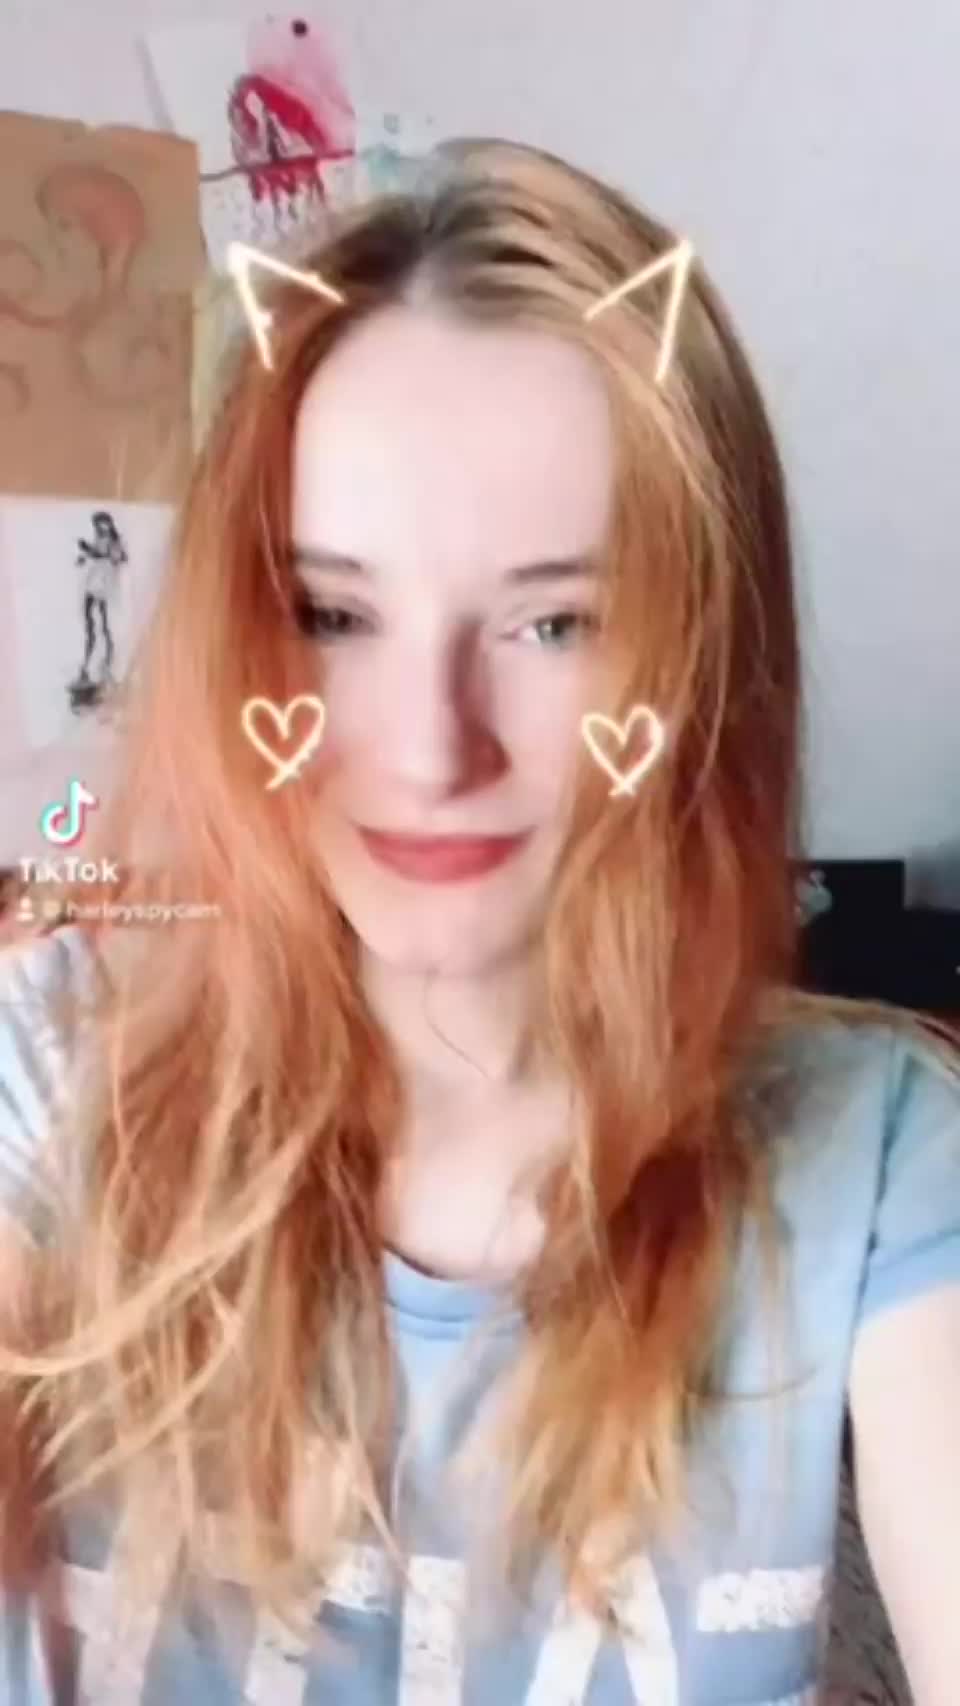 harleyspy adorable redhead